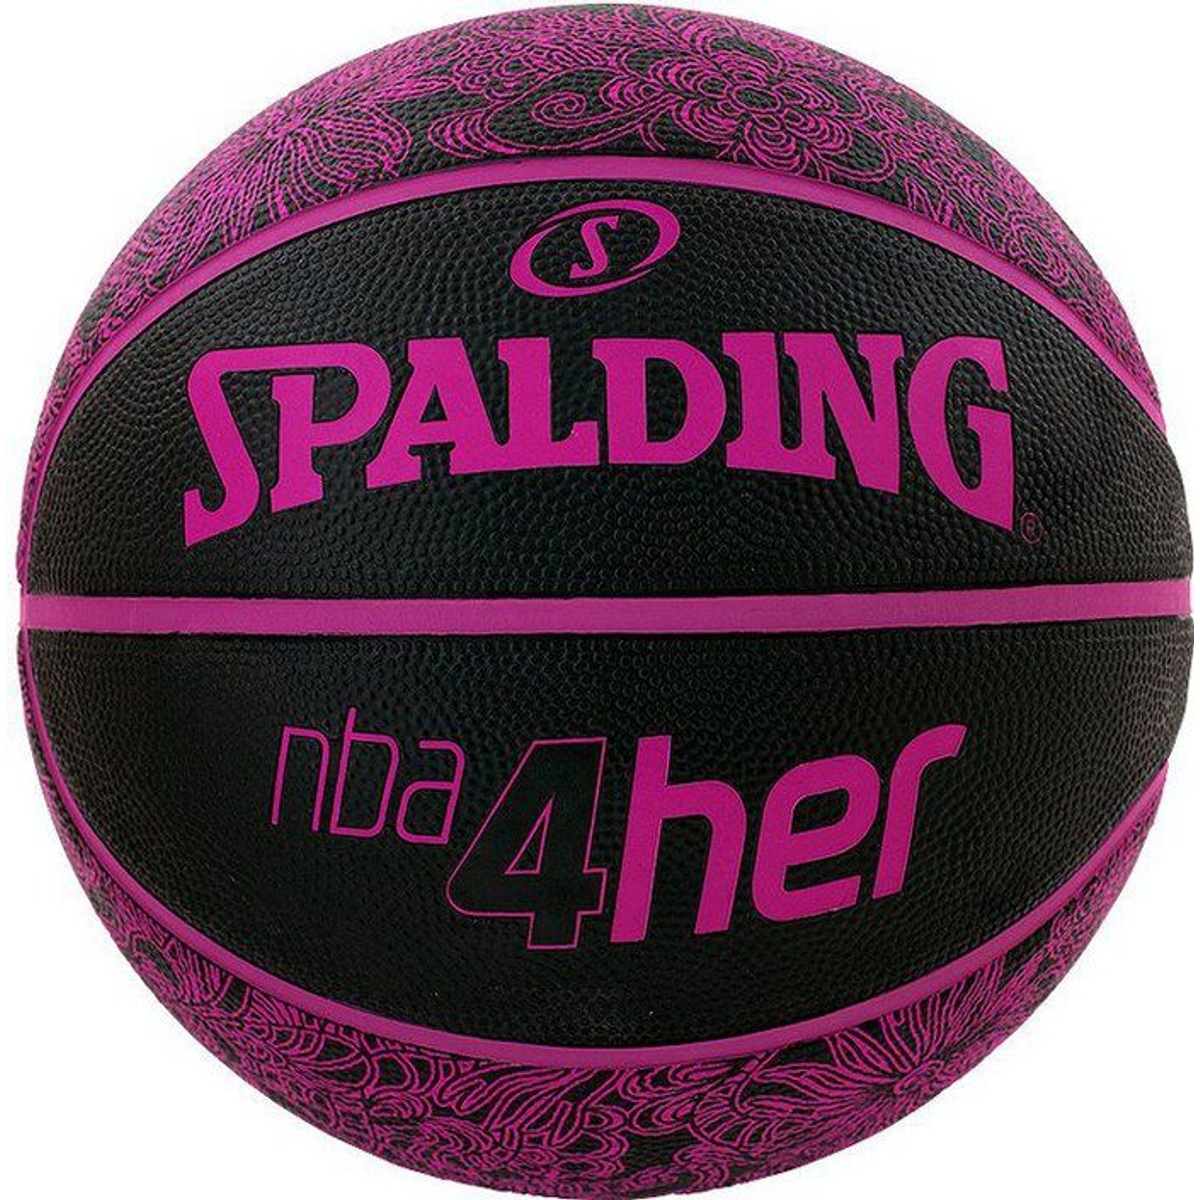 Spalding 4Her Basketbal